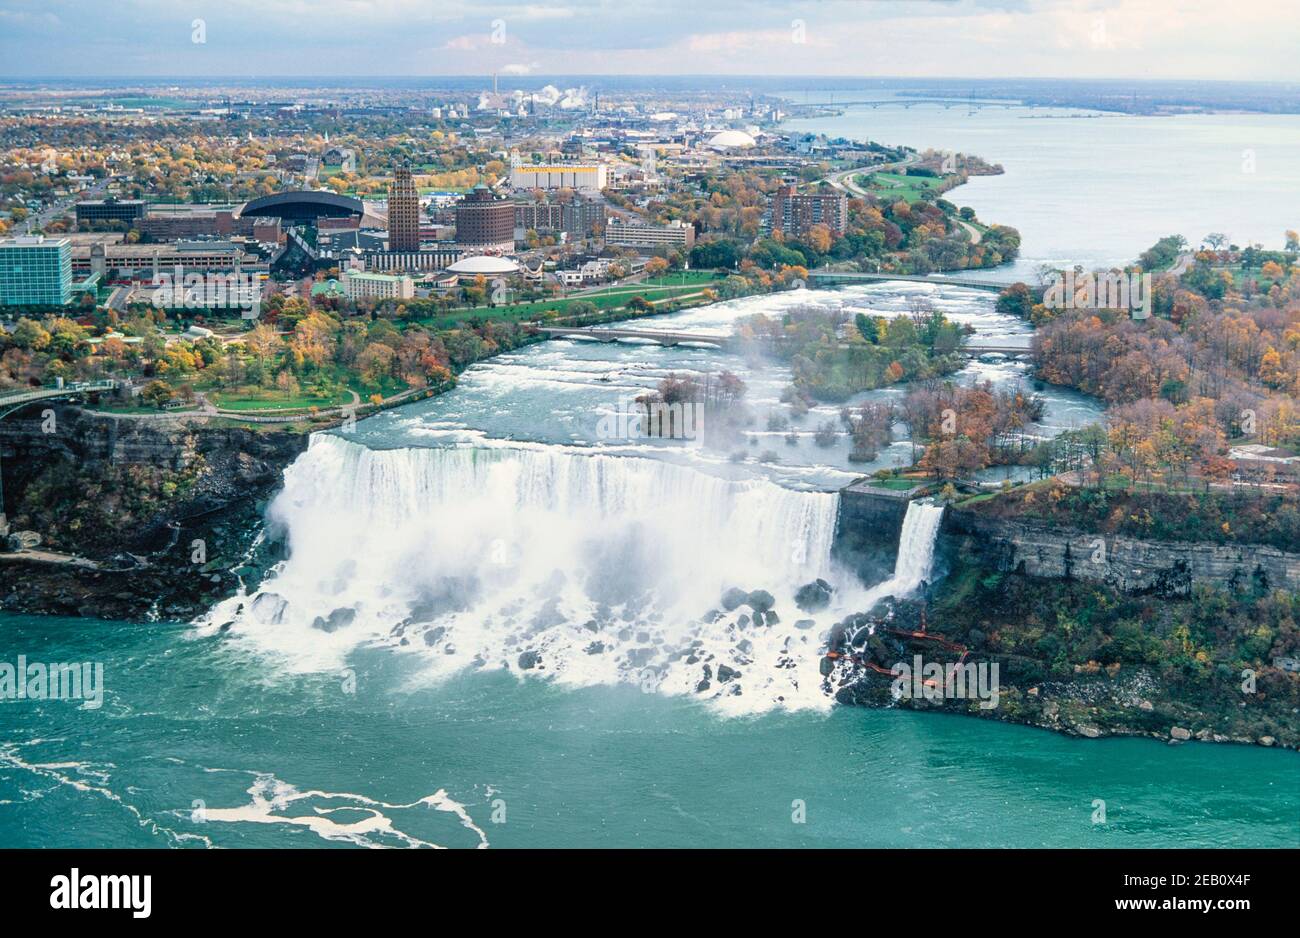 1995 Canada Niagara Falls est une ville de l'Ontario, au Canada. Il se trouve sur la rive ouest de la rivière Niagara, dans la région du Golden Horseshoe, dans le sud de l'Ontario. Les chutes américaines sont la deuxième plus grande des trois chutes d'eau que l'on appelle ensemble chutes Niagara sur la rivière Niagara, le long de la frontière canado-américaine. Les chutes Bridal Veil sont séparées des chutes Horseshoe par Goat Island et des chutes américaines par Luna Island. Les chutes sont vues depuis la terrasse d'observation de la tour Skylon, du côté canadien de la rivière Niagara Niagara Niagara Falls Ontario Canada Banque D'Images